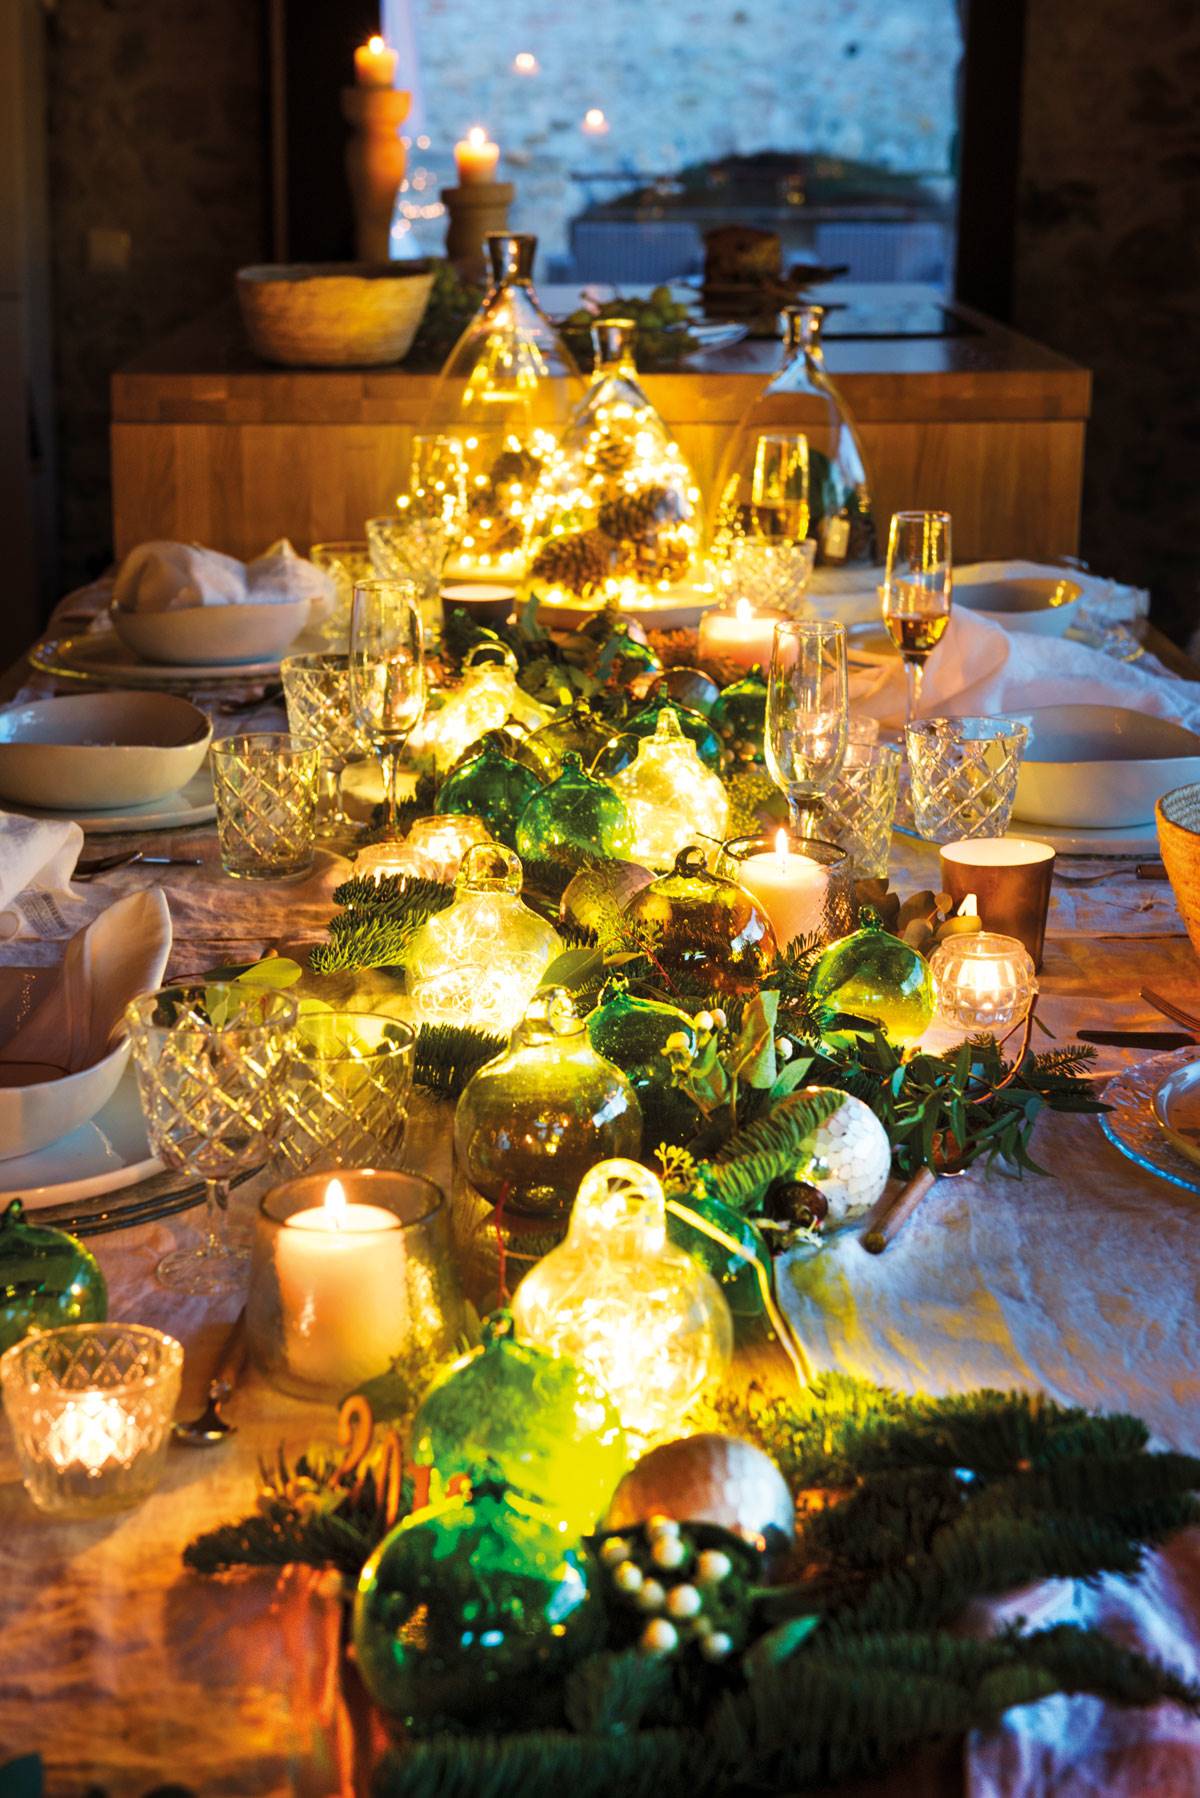 Centro de mesa navideño decorado con velas y guirnaldas luminosas.